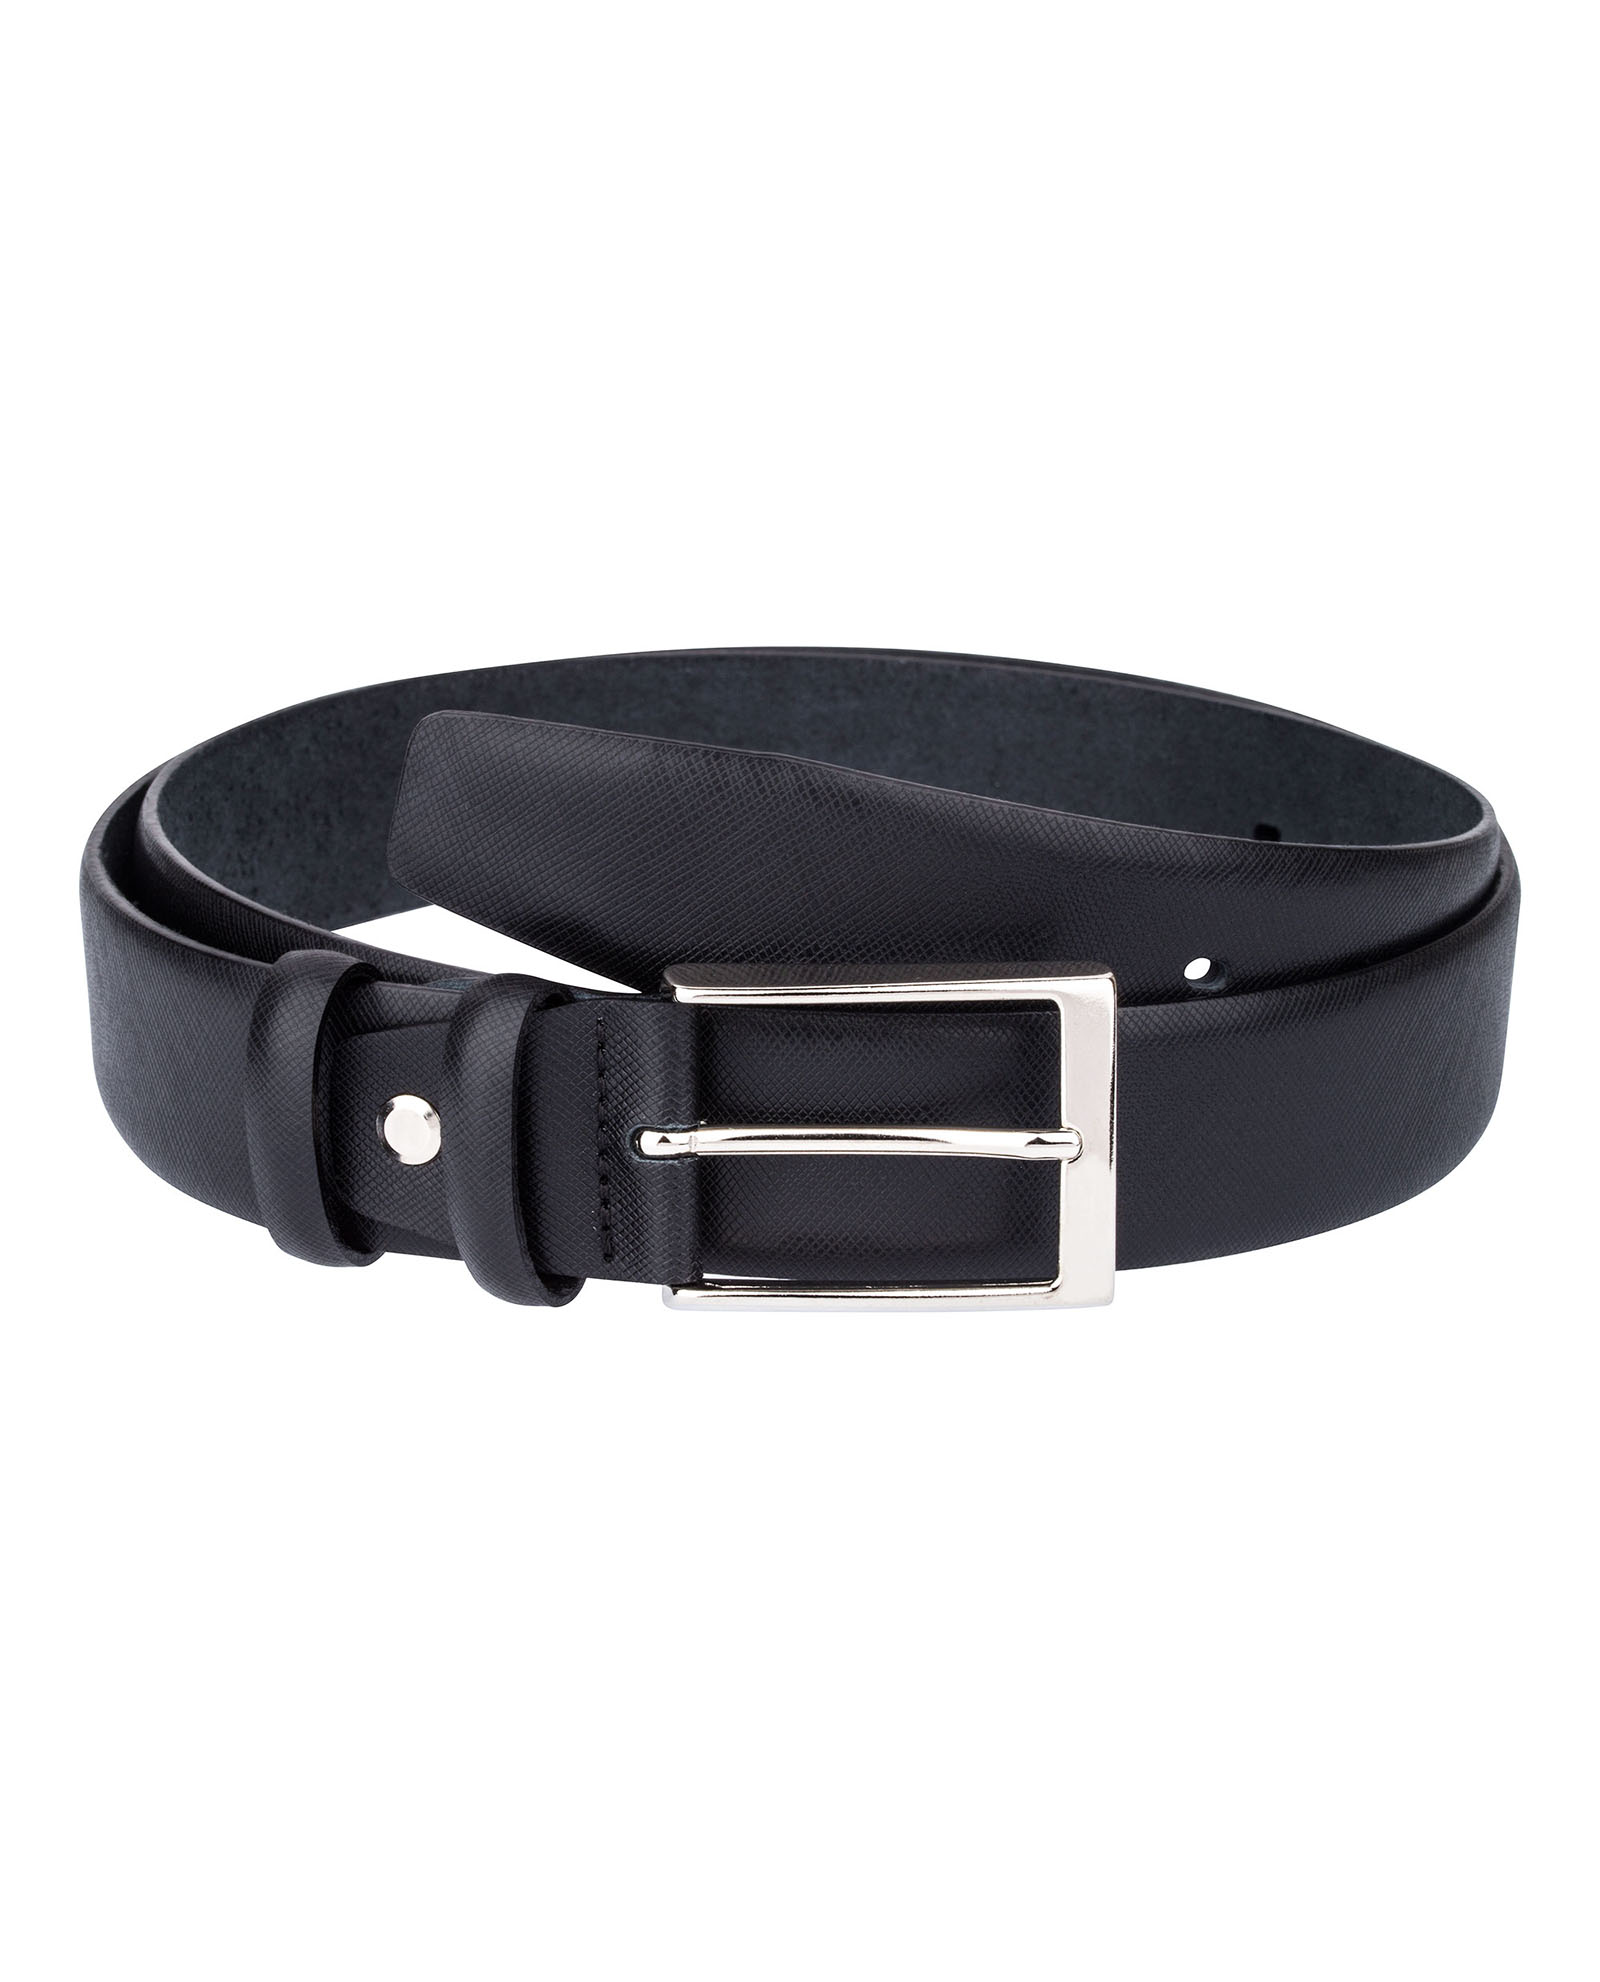 Buy Black Saffiano Leather Belt for Men | LeatherBeltsOnline.com | Free ...